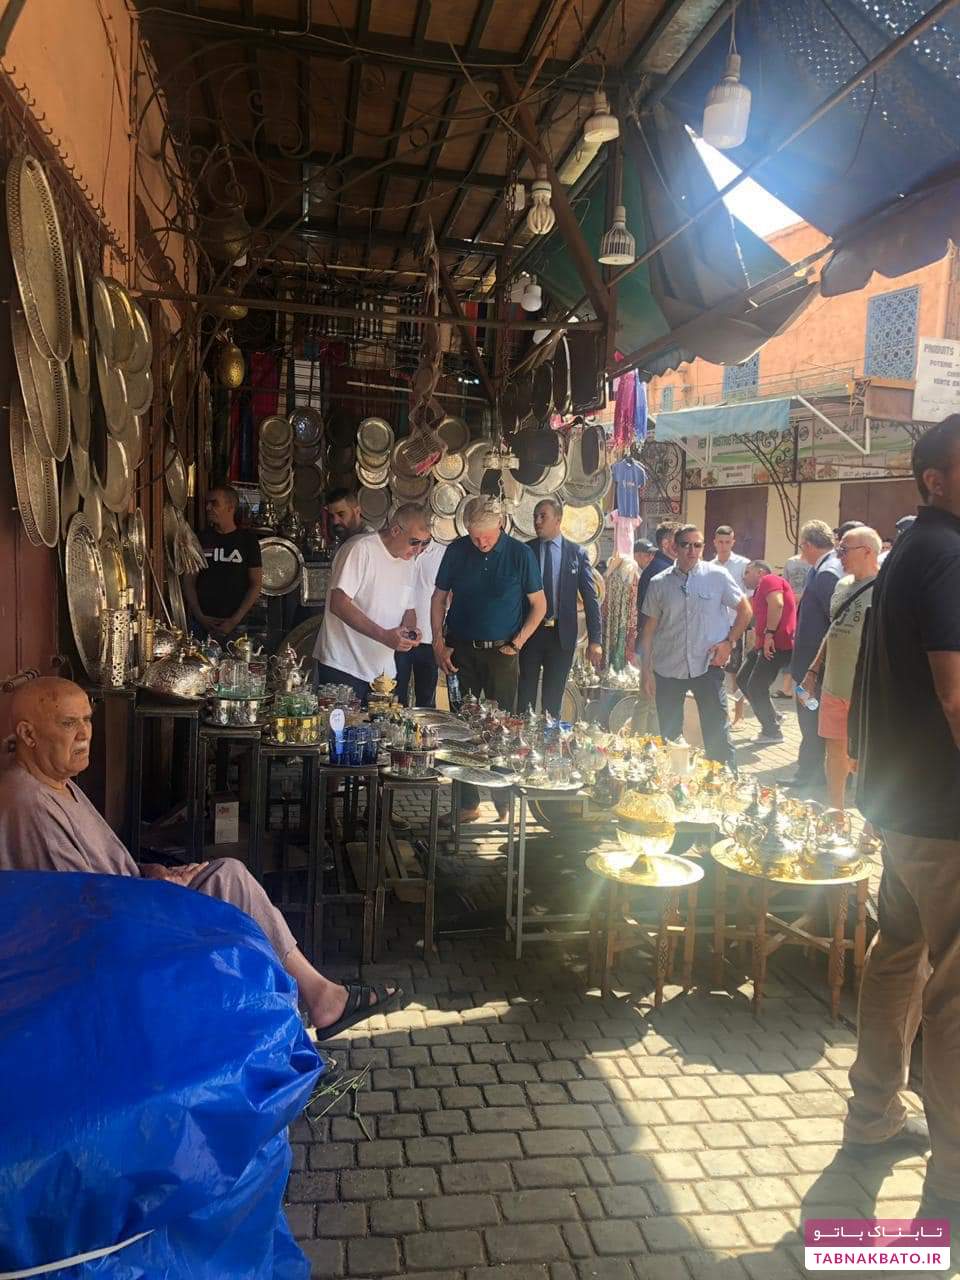 گردش بیل کلینتون در مراکش در شرایط امنیتی شدید